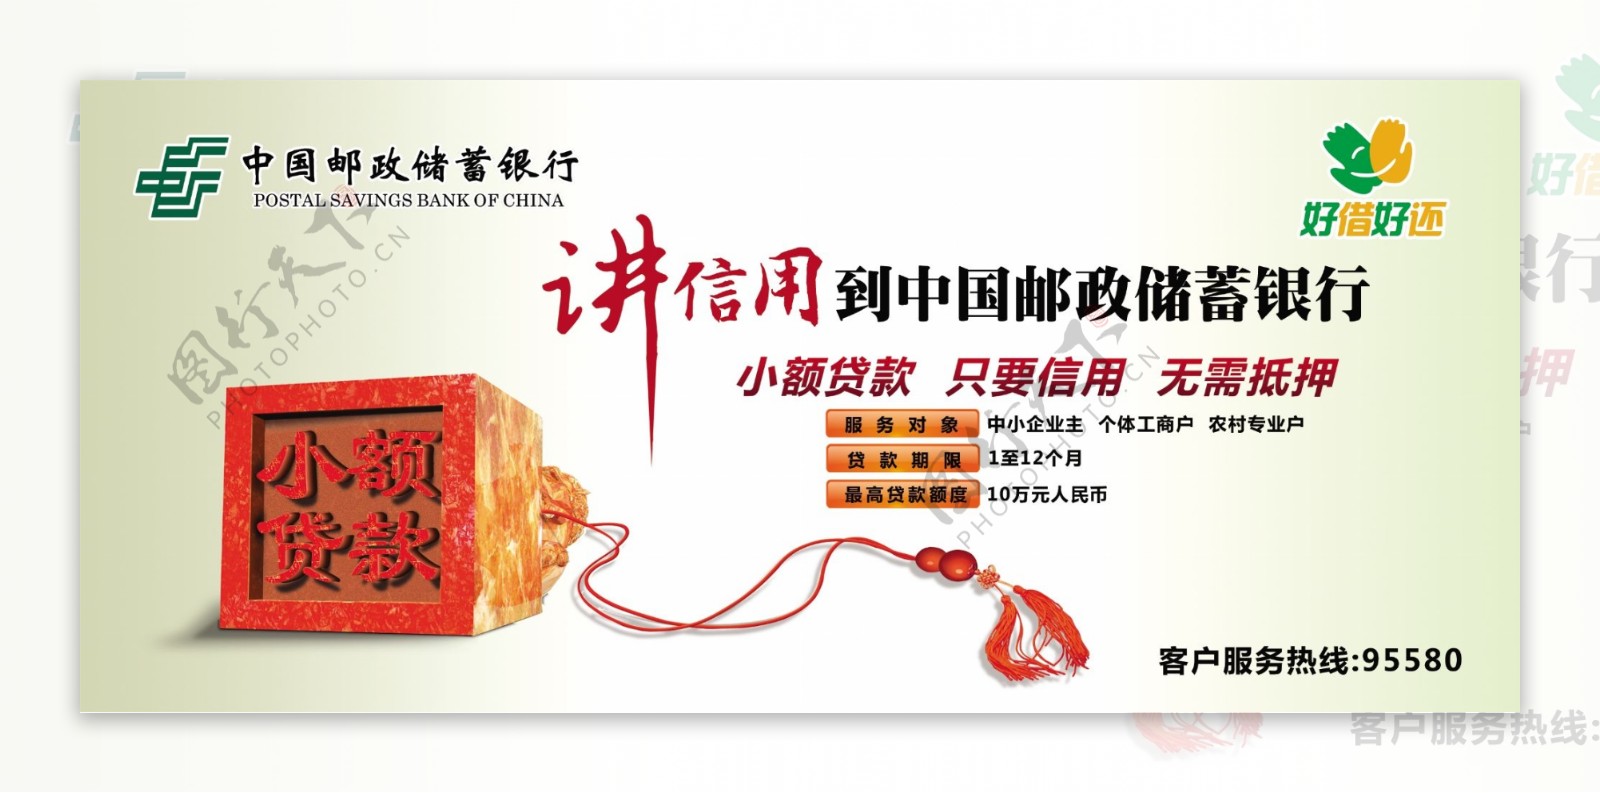 中国邮政储蓄银行贷款图片